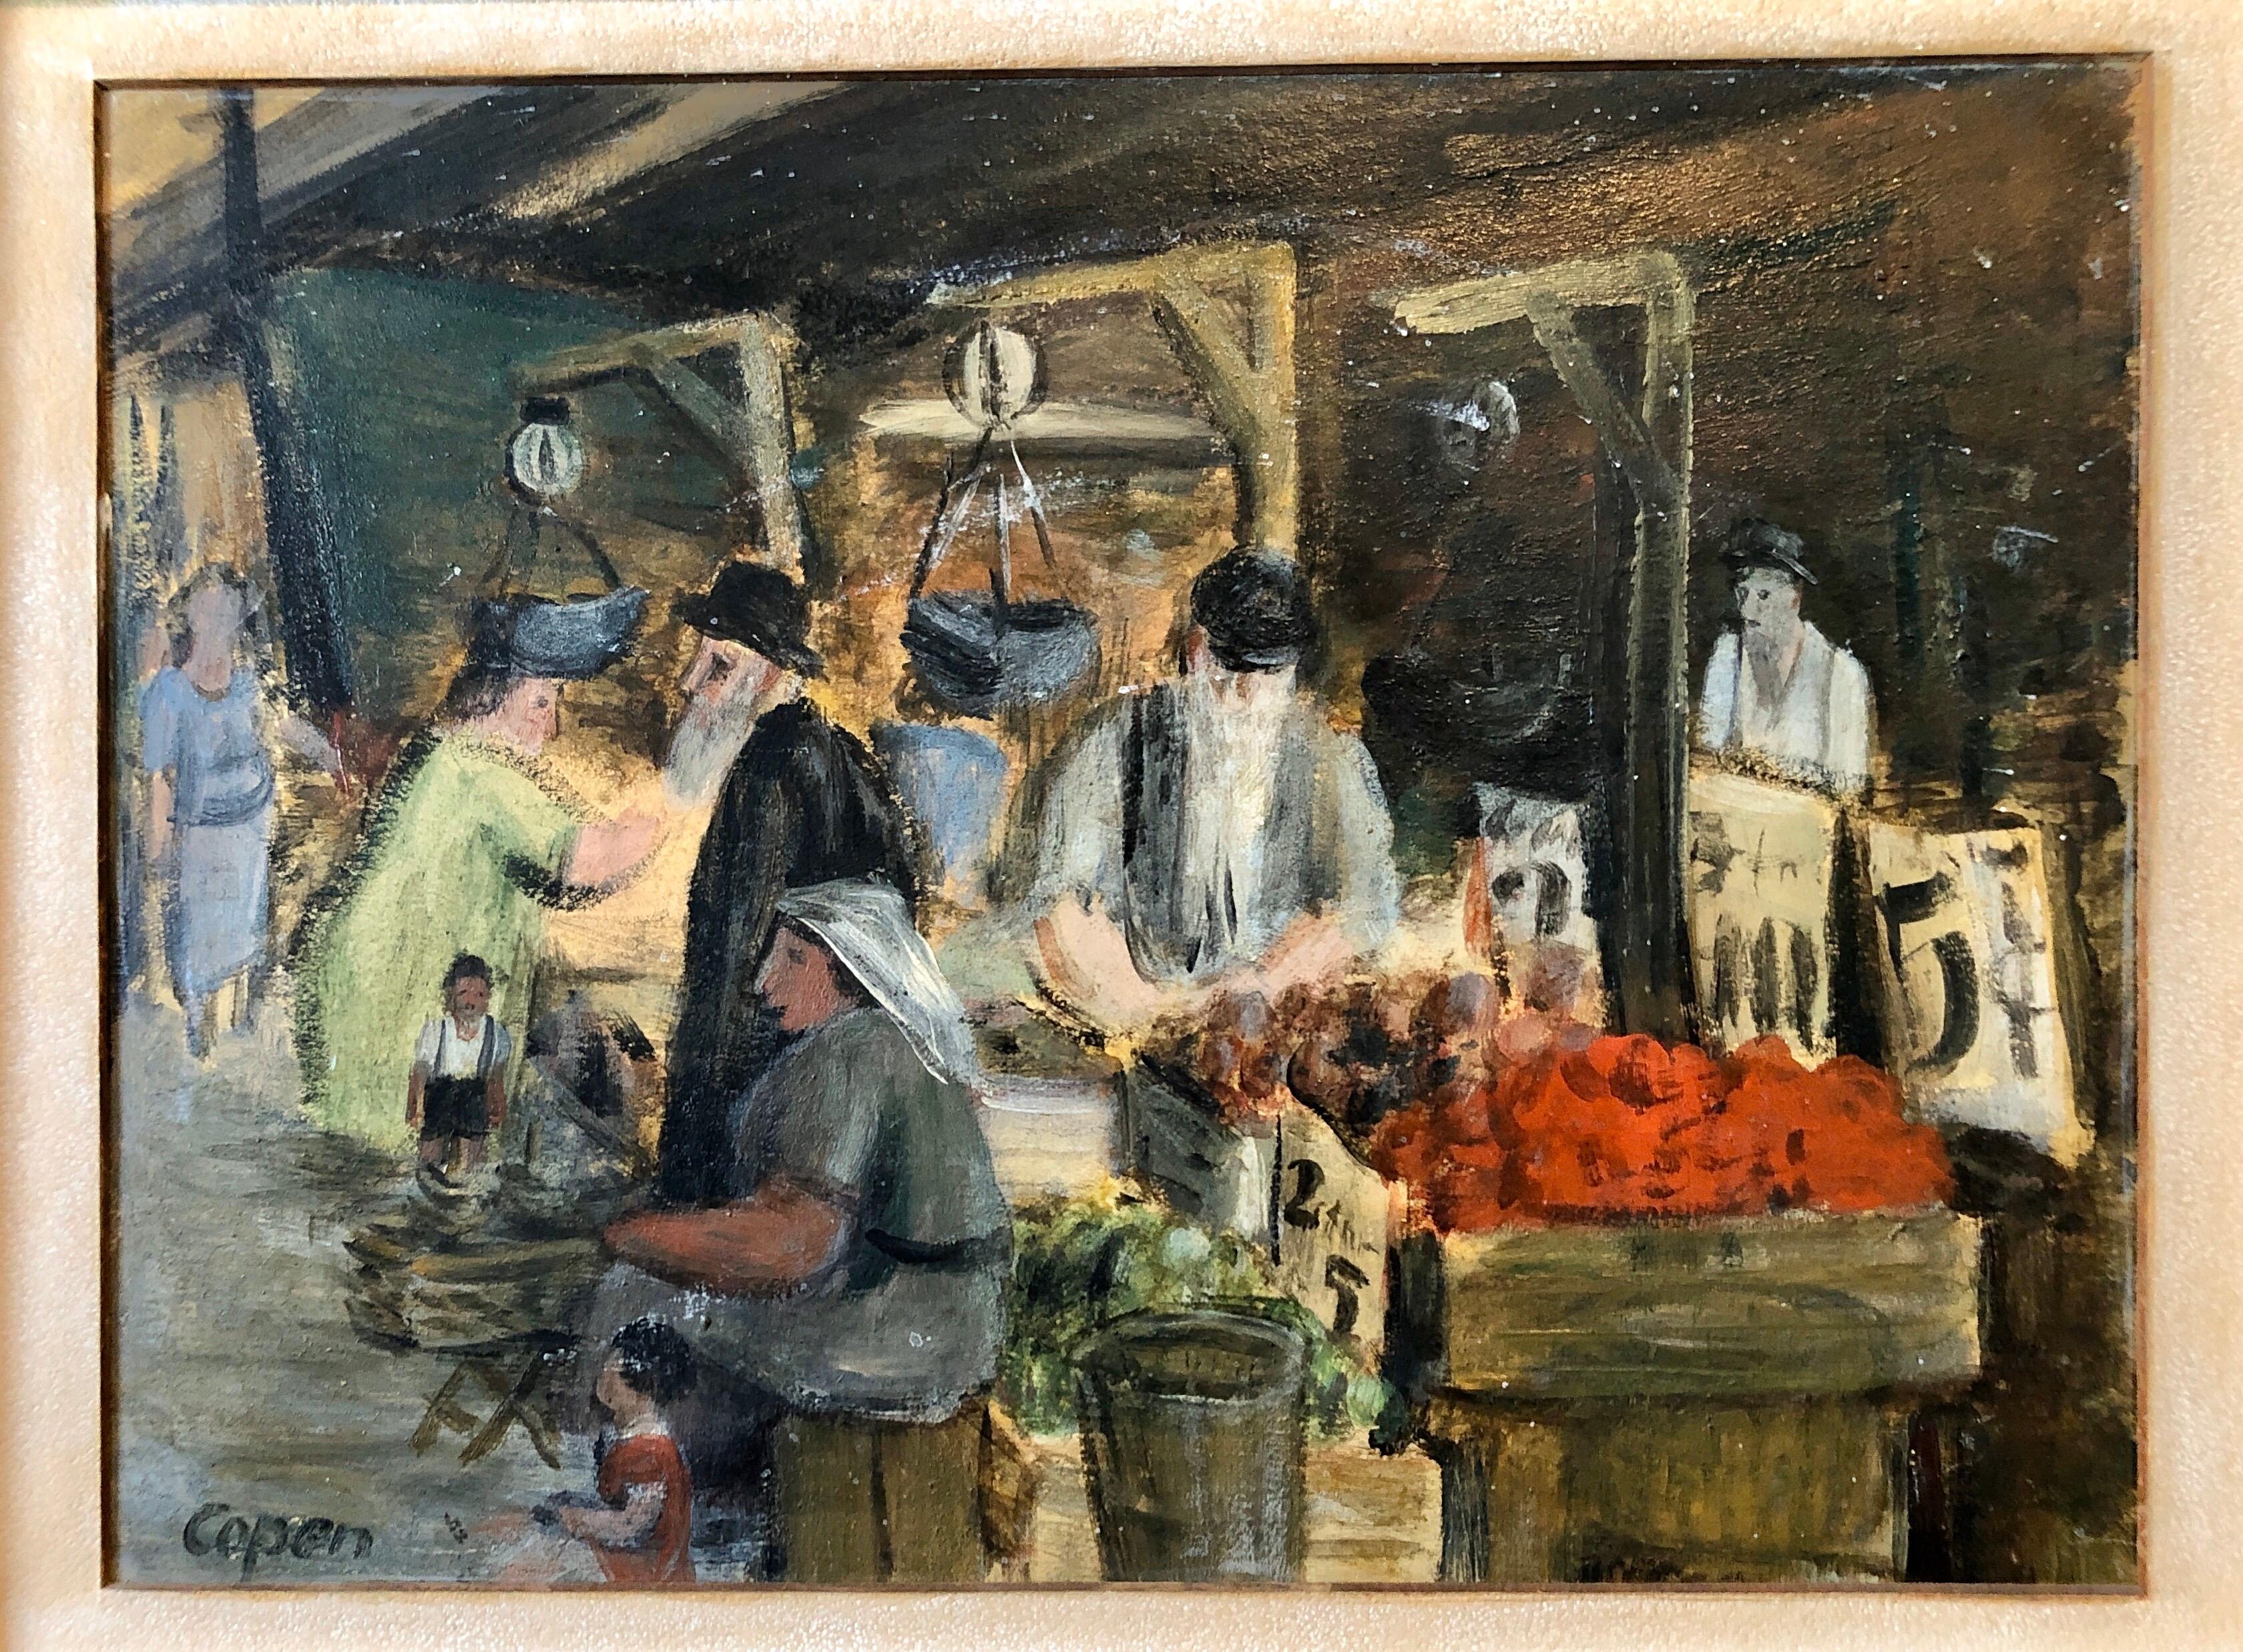  Peinture à l'huile - Scène de marché judaïque, Shuk, lapin israélien européen - Réalisme Painting par Unknown